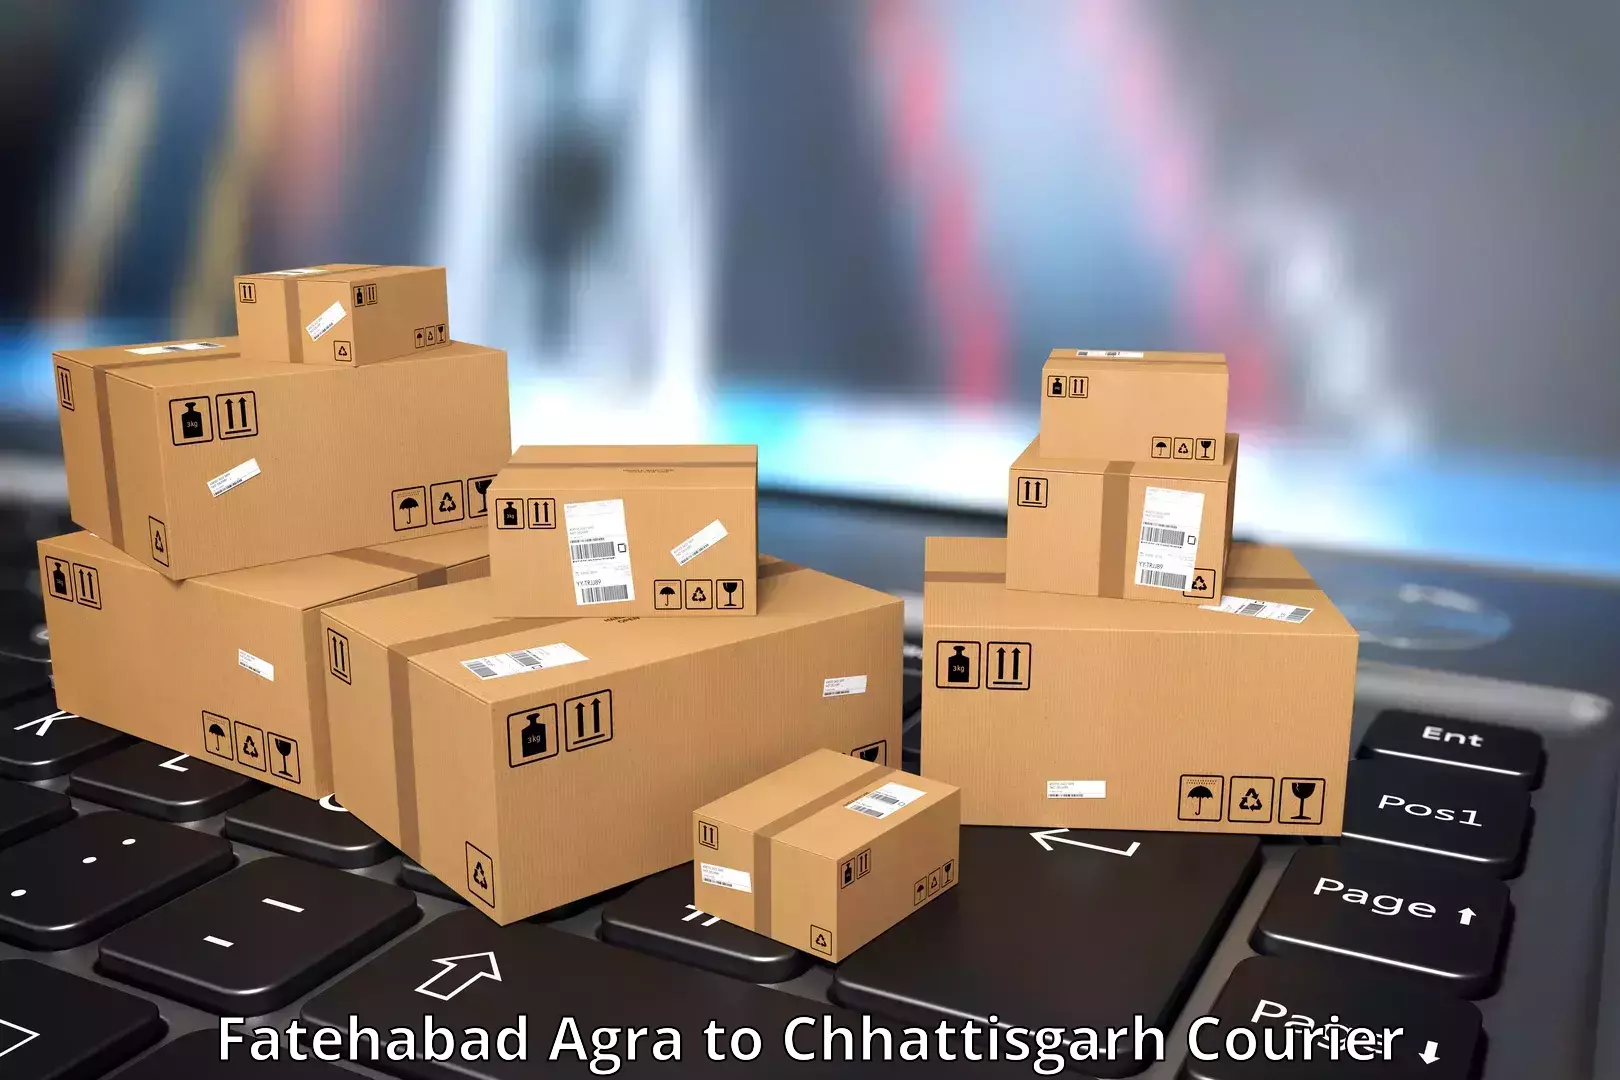 24/7 courier service Fatehabad Agra to Patna Chhattisgarh